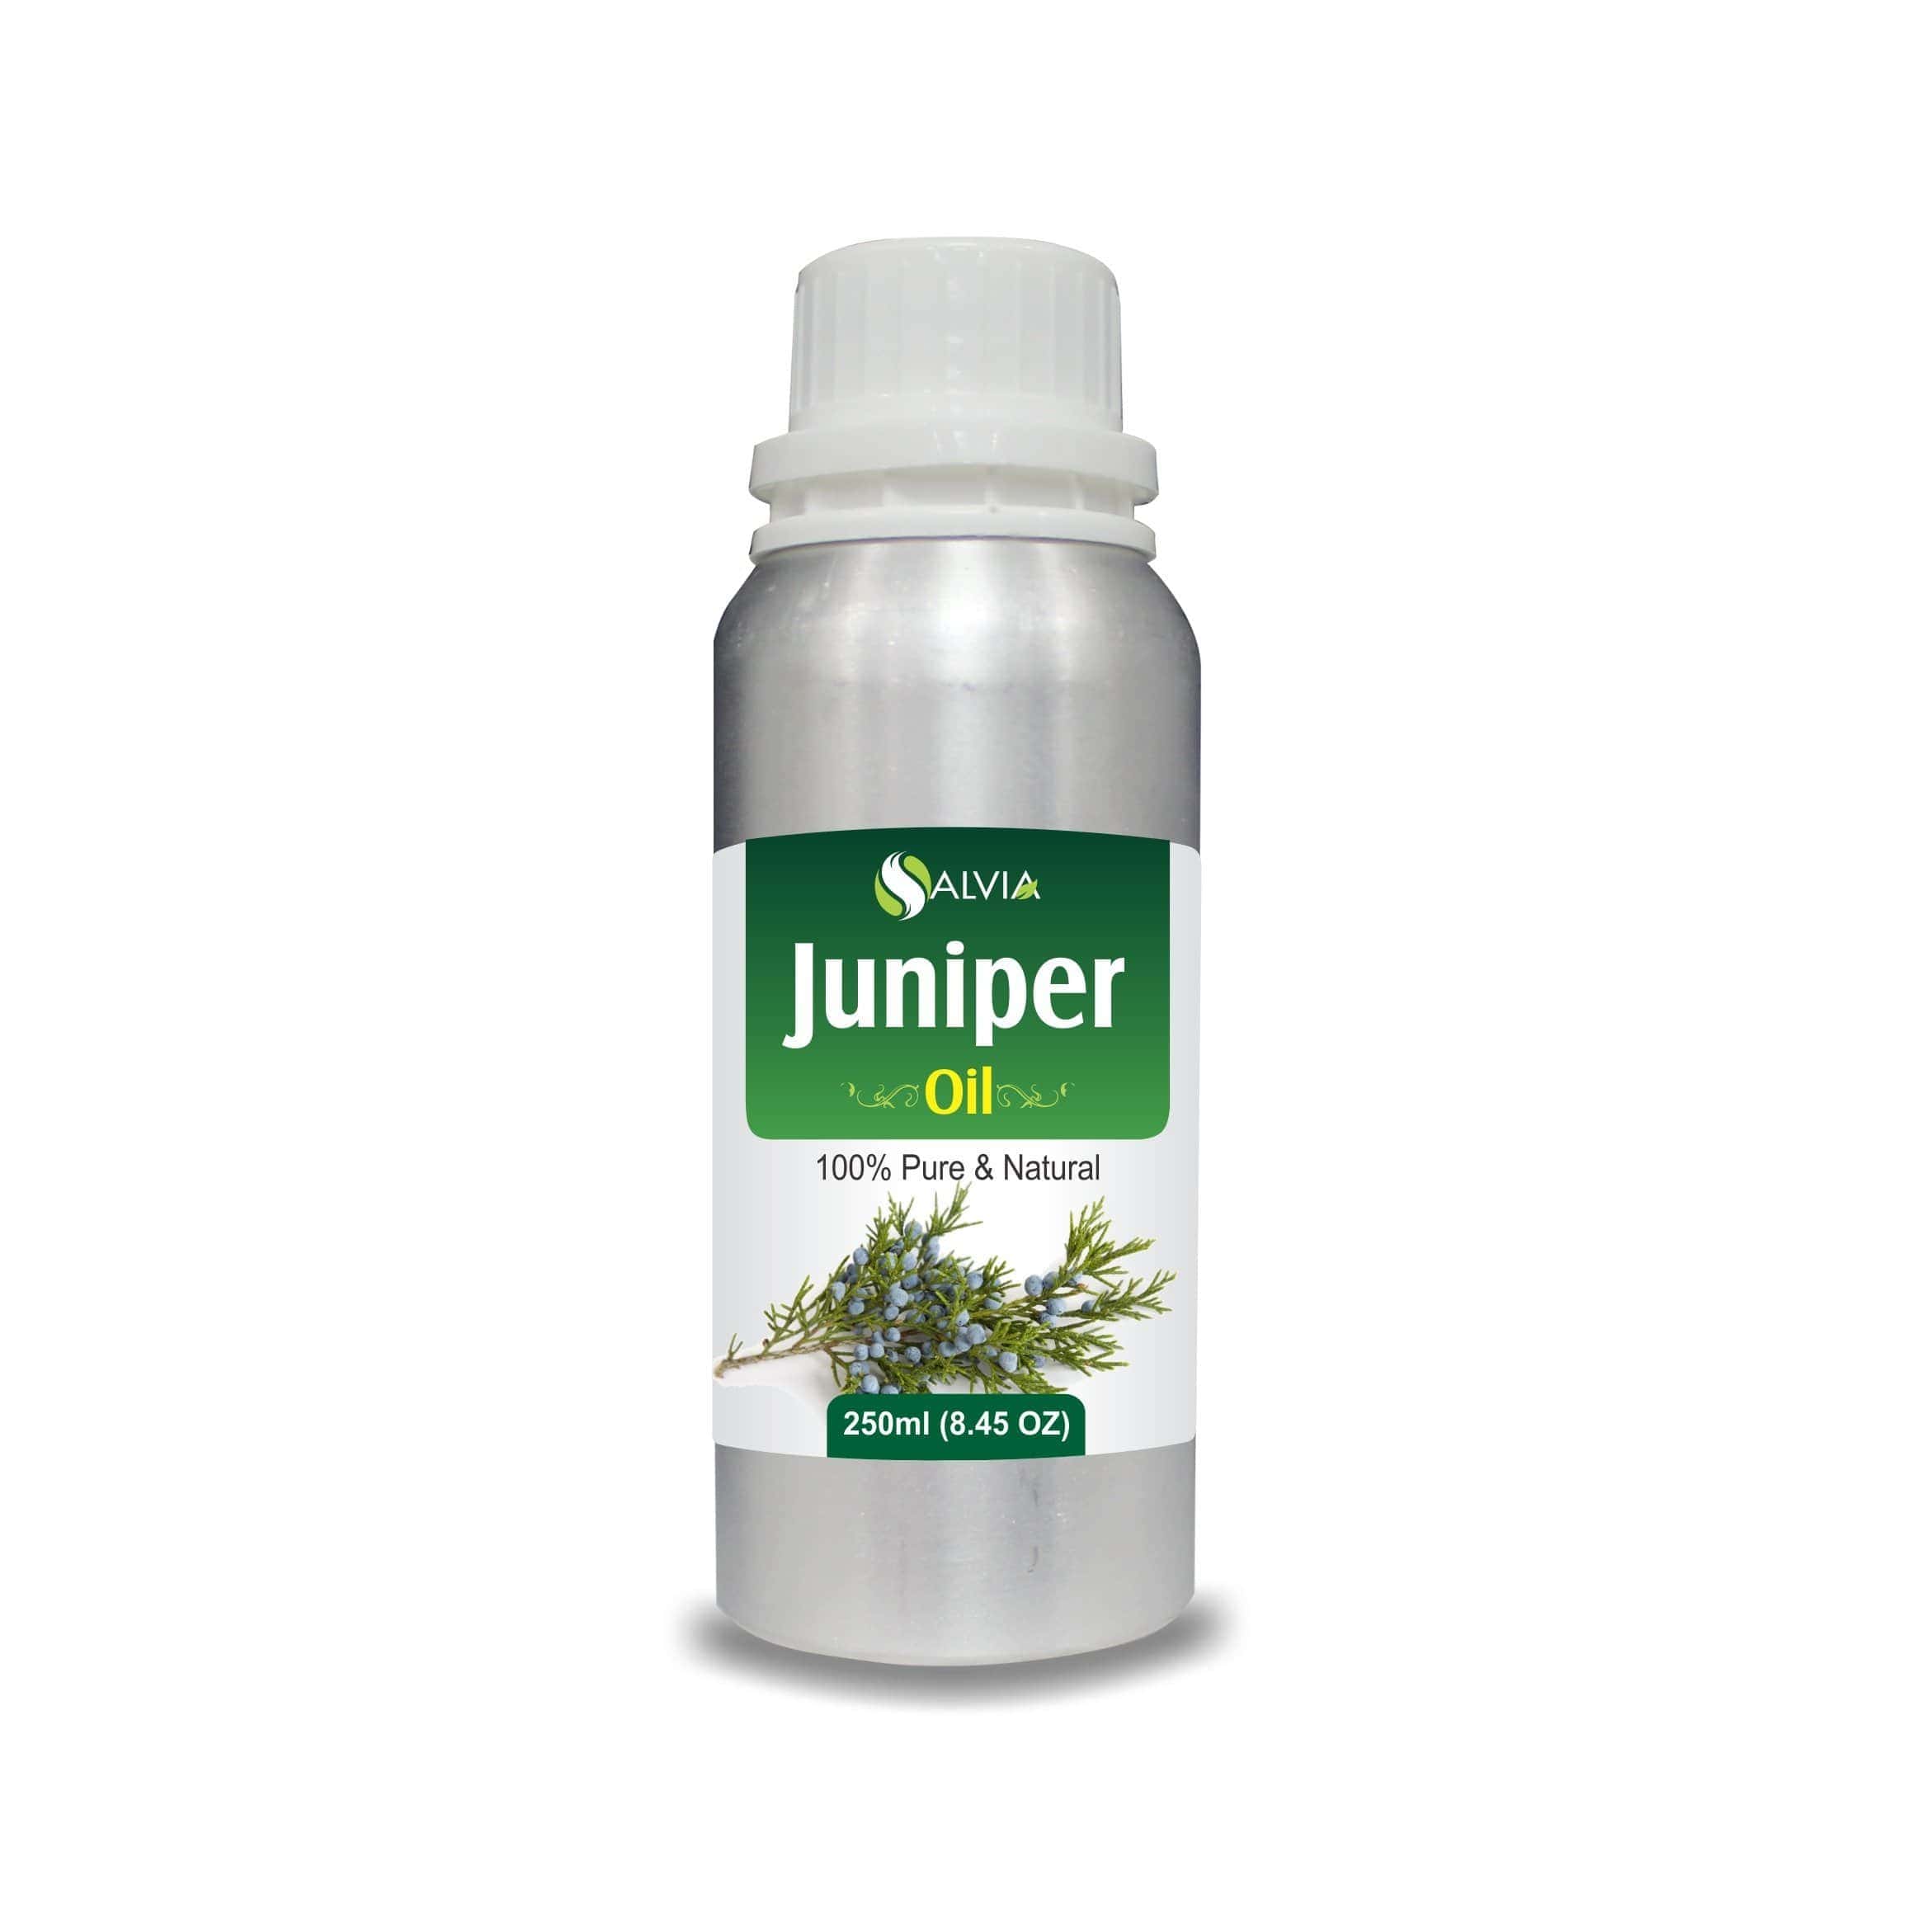 juniper oil benefits for skin